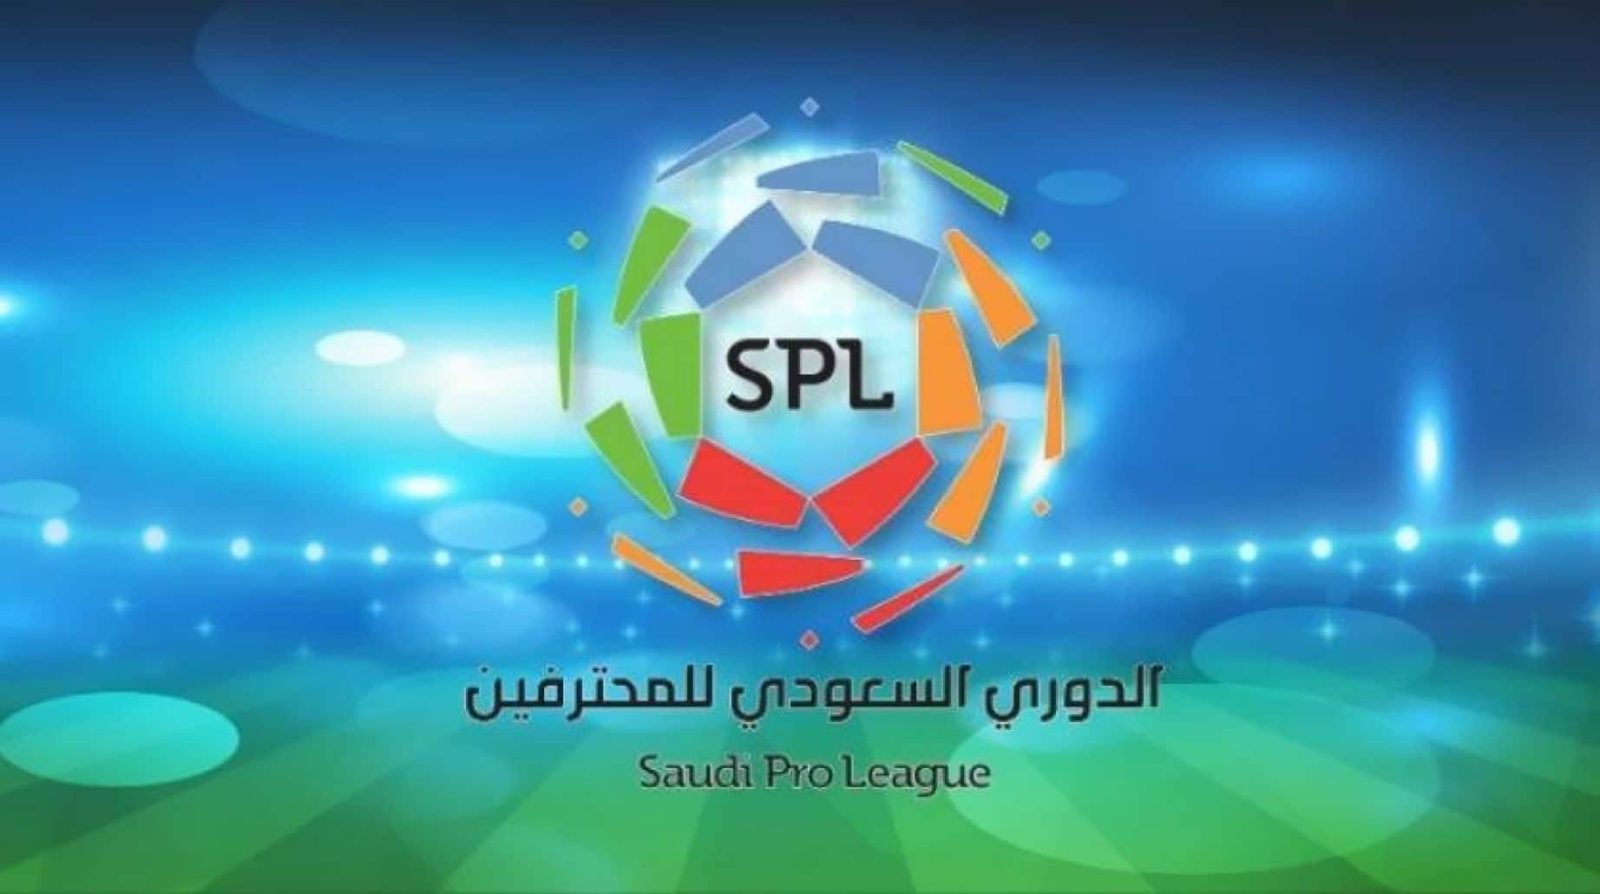 بعد تعليق النشاط الرياضي.. تعديلات على مواعيد إقامة الجولات في الدوري السعودي للمحترفين